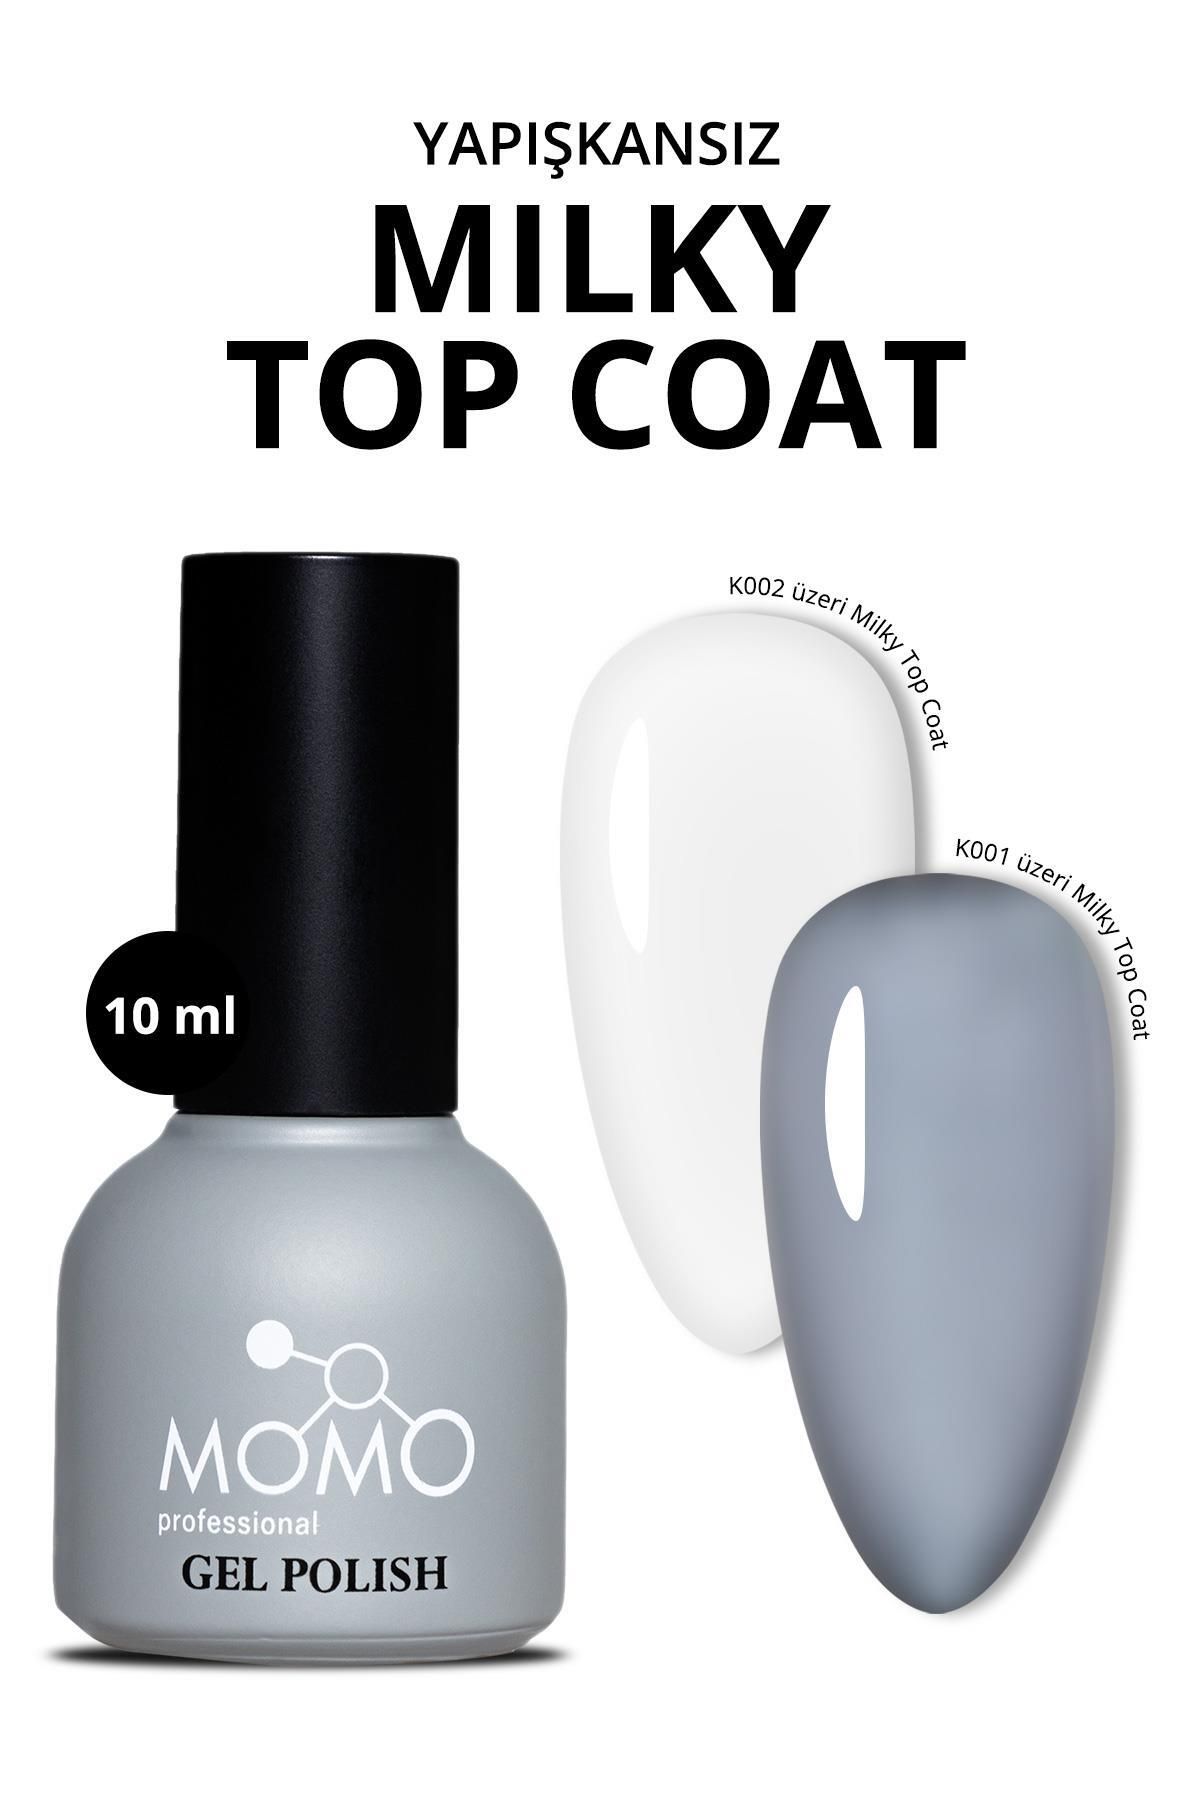 MOMO professional Kalıcı Oje İçin Milky Top Coat, Rakı Beyazı 10 ml